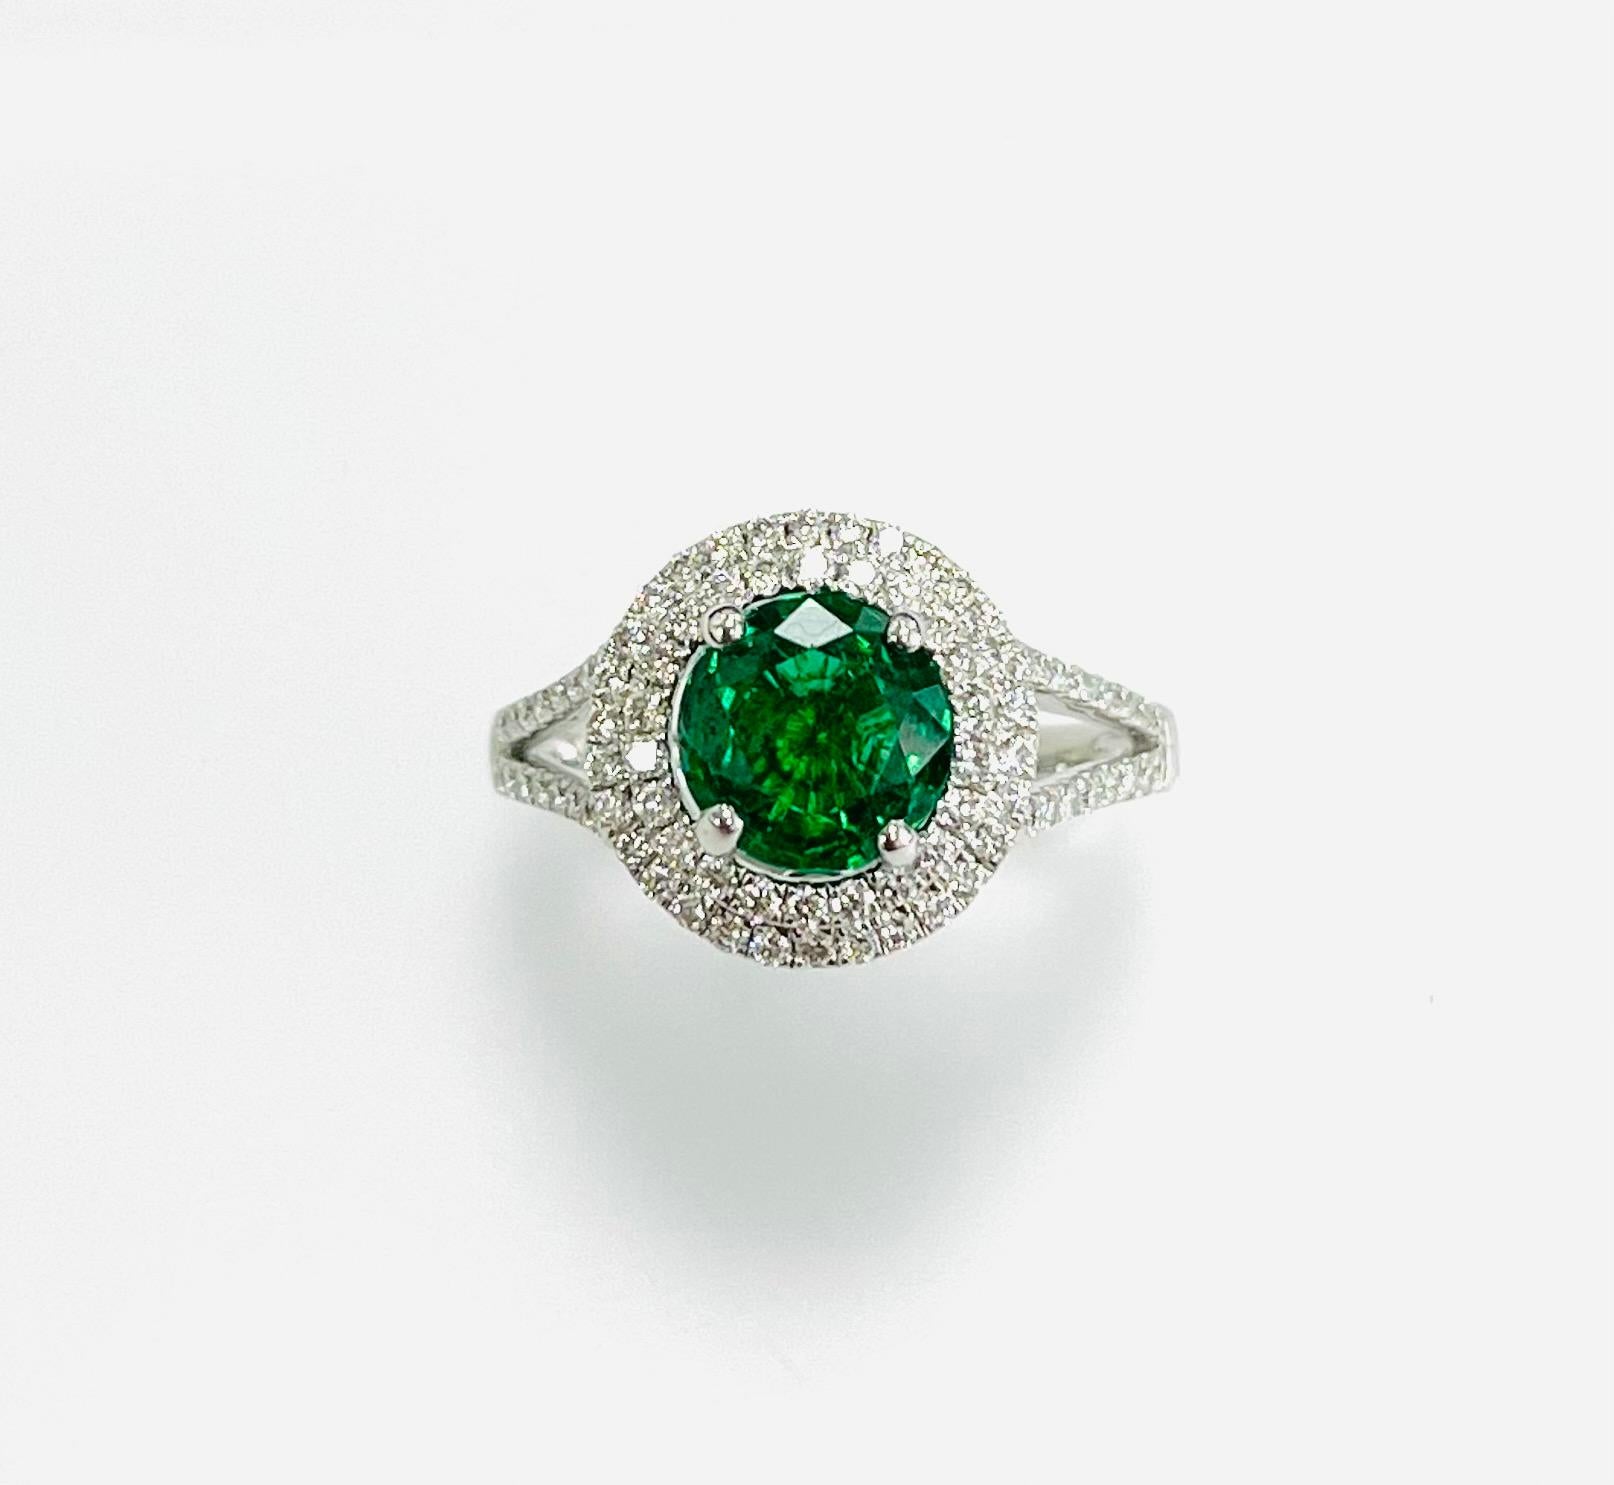 1.25 Karat runder Smaragd aus Sambia in einem Ring aus 18 Karat Weißgold mit 0,59 Karat Diamanten in einem doppelten Halo  und auf halbem Weg  den geteilten Schaft.